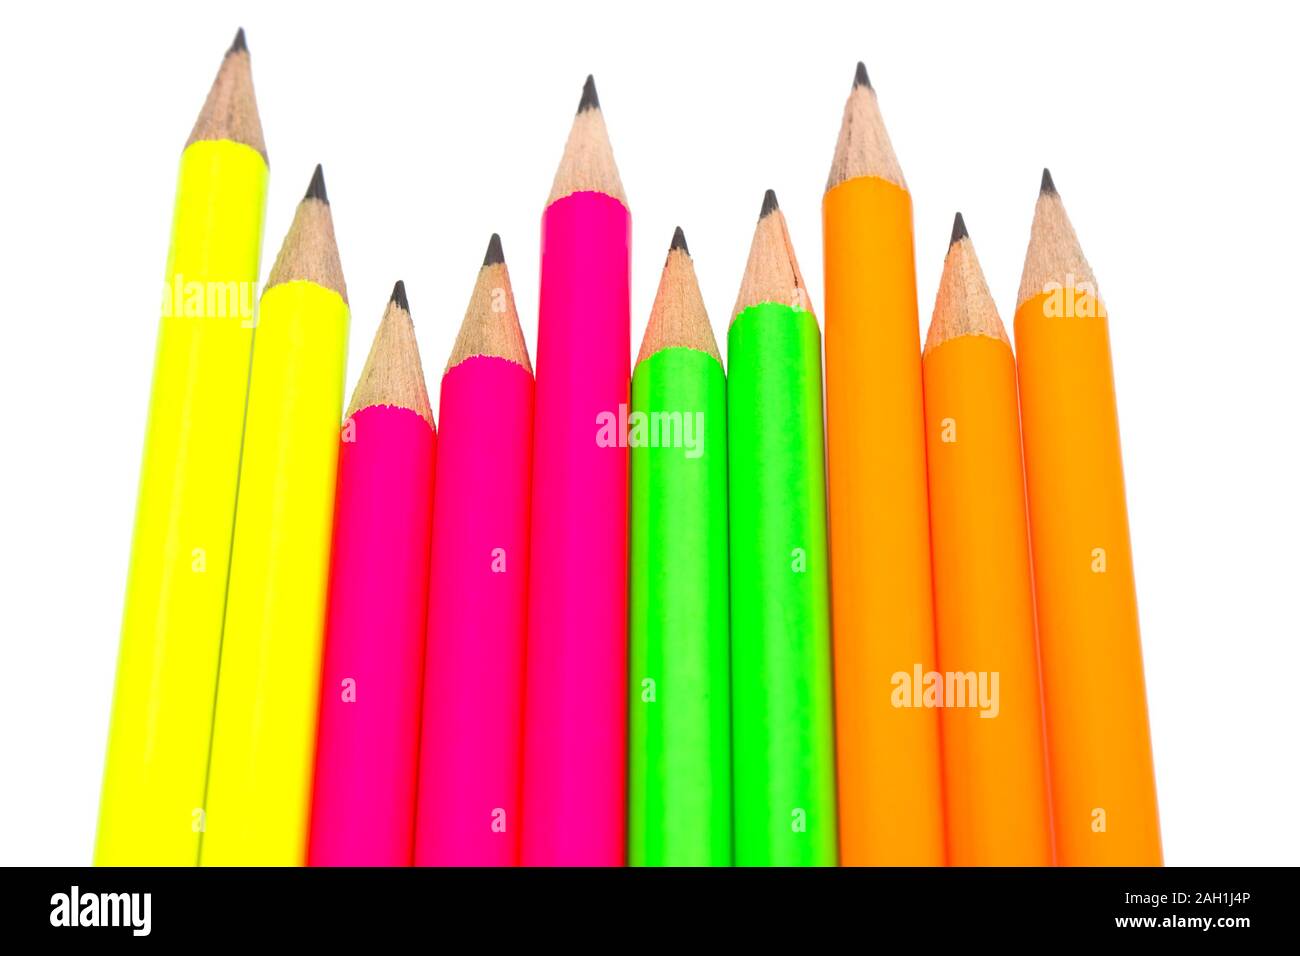 Sortiment von fluoreszierende Buntstifte auf weißem Hintergrund  Stockfotografie - Alamy